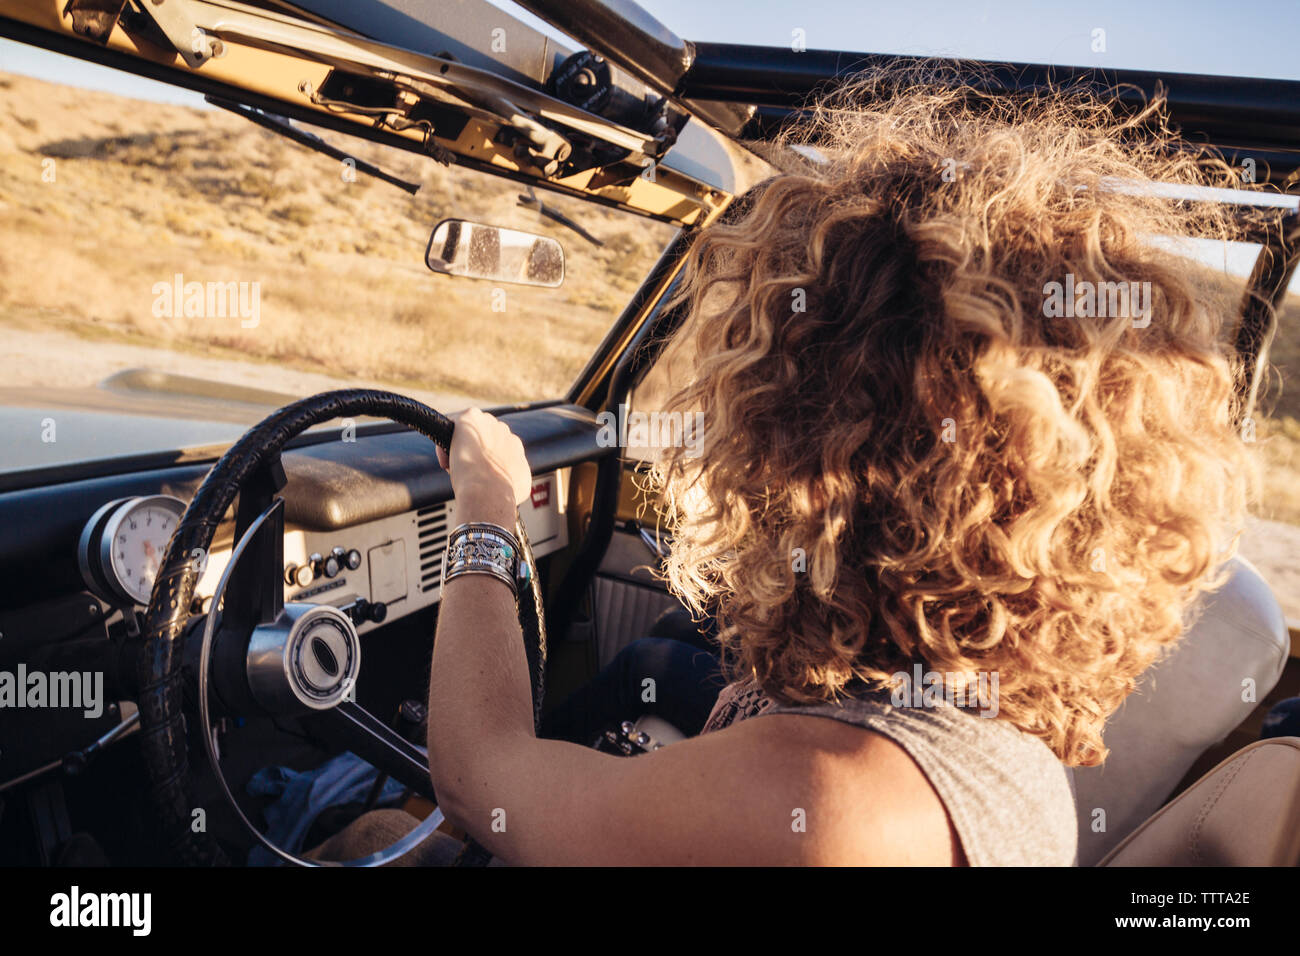 Vista laterale di donna con capelli ricci di guida off-road veicolo Foto Stock